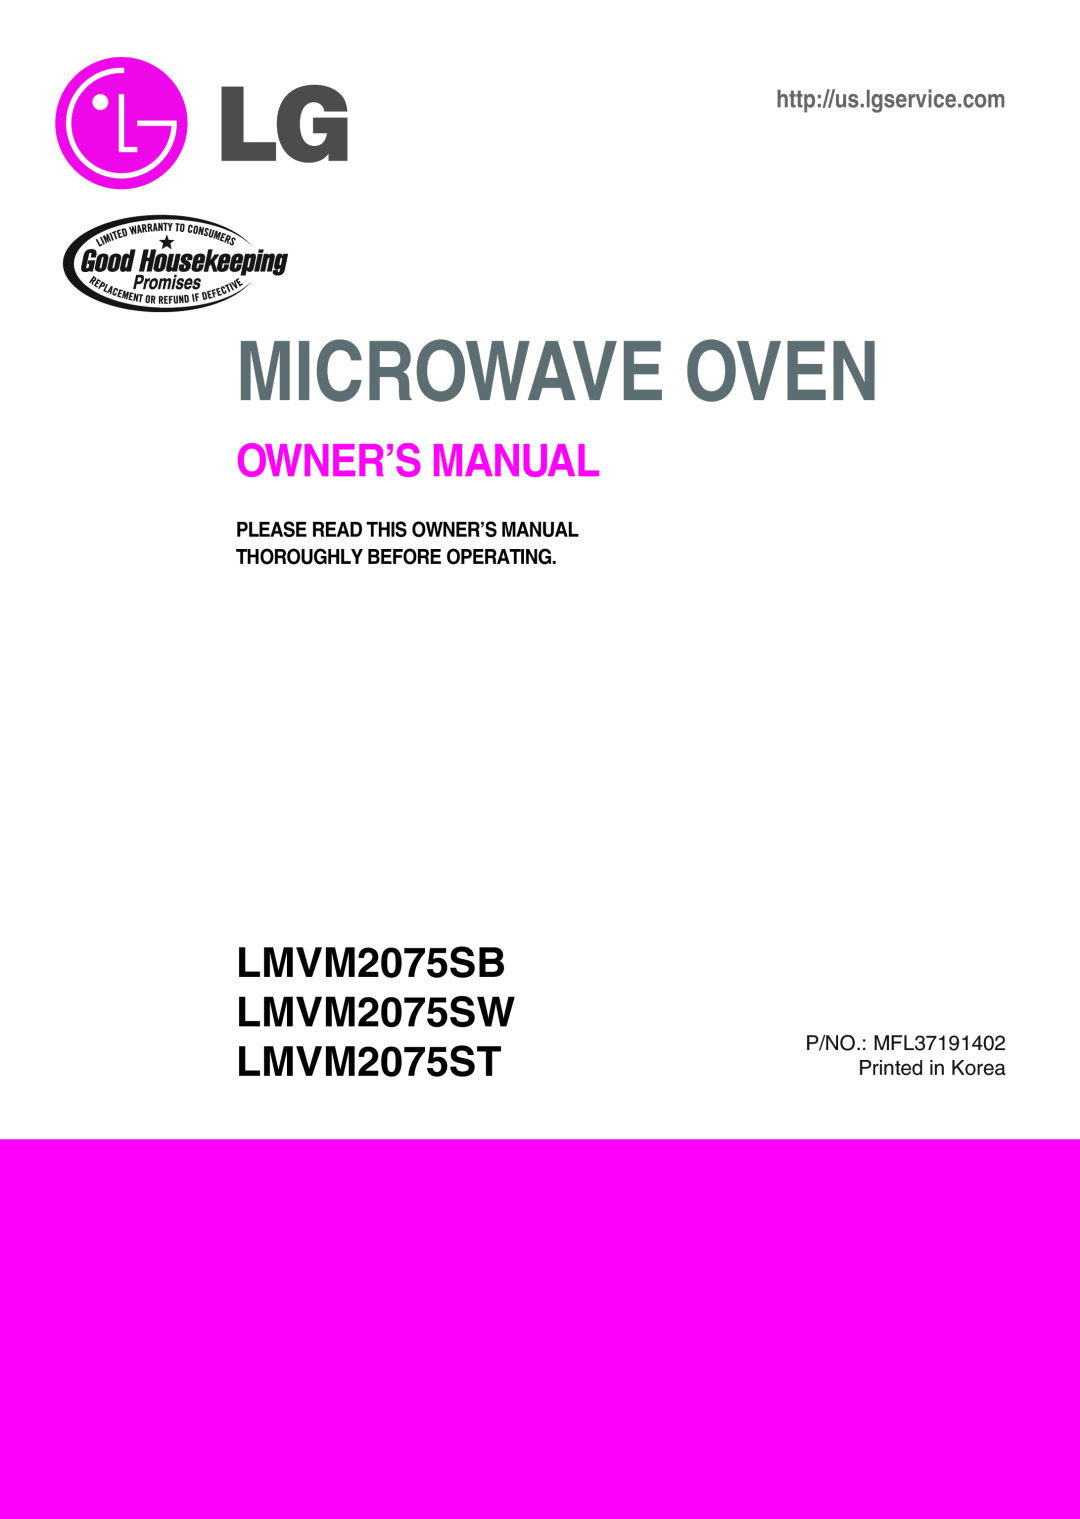 LG Electronics owner manual LMVM2075SB LMVM2075SW LMVM2075ST, Microwave Oven, Owner’S Manual, http//us.lgservice.com 